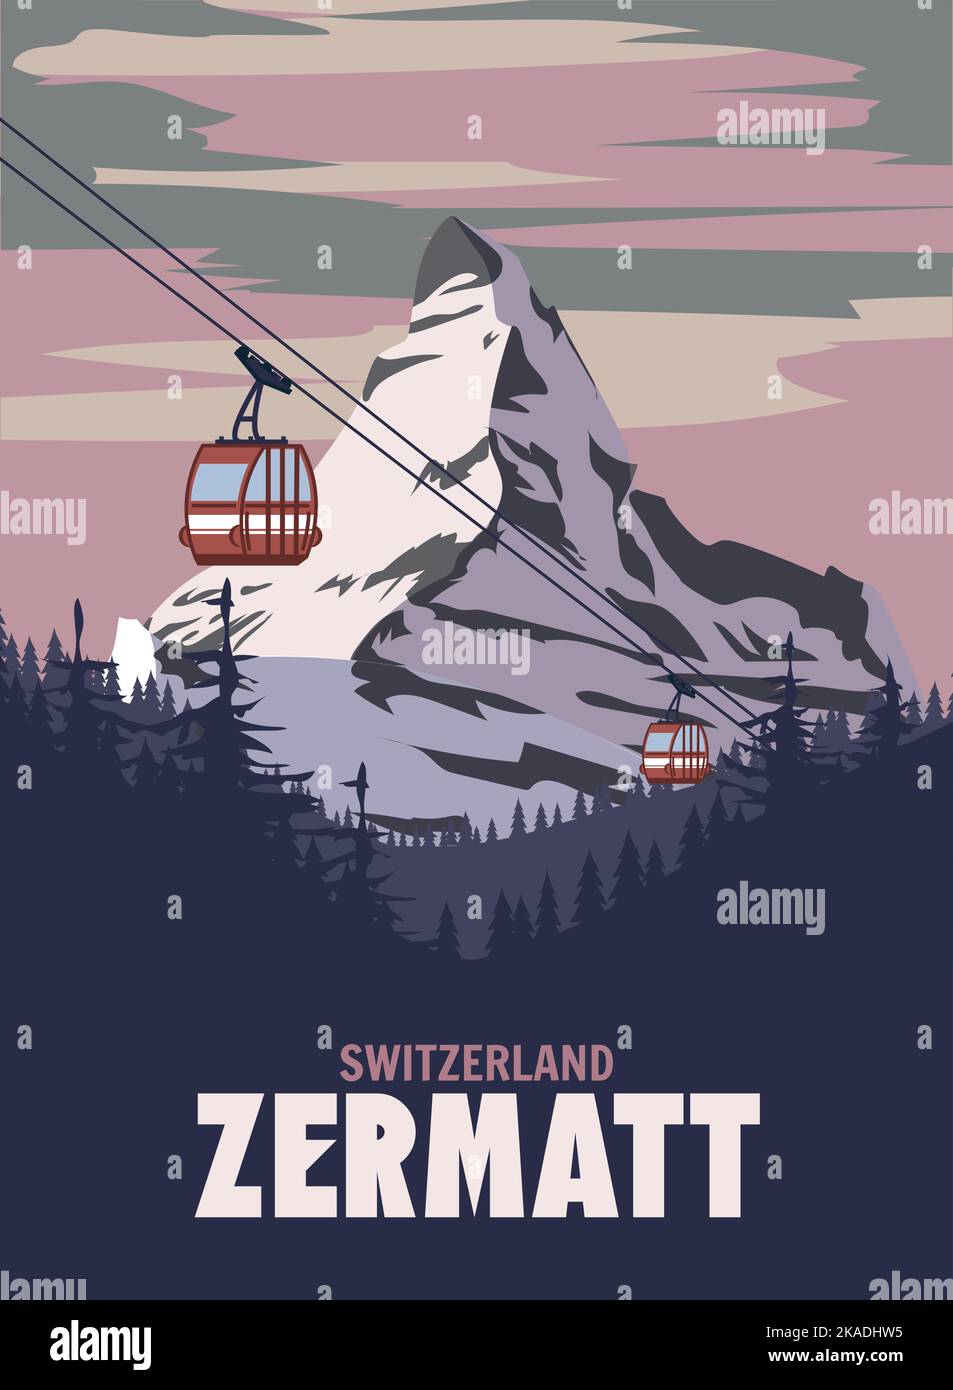 Zermatt peak chalet Stock Vector Images - Alamy